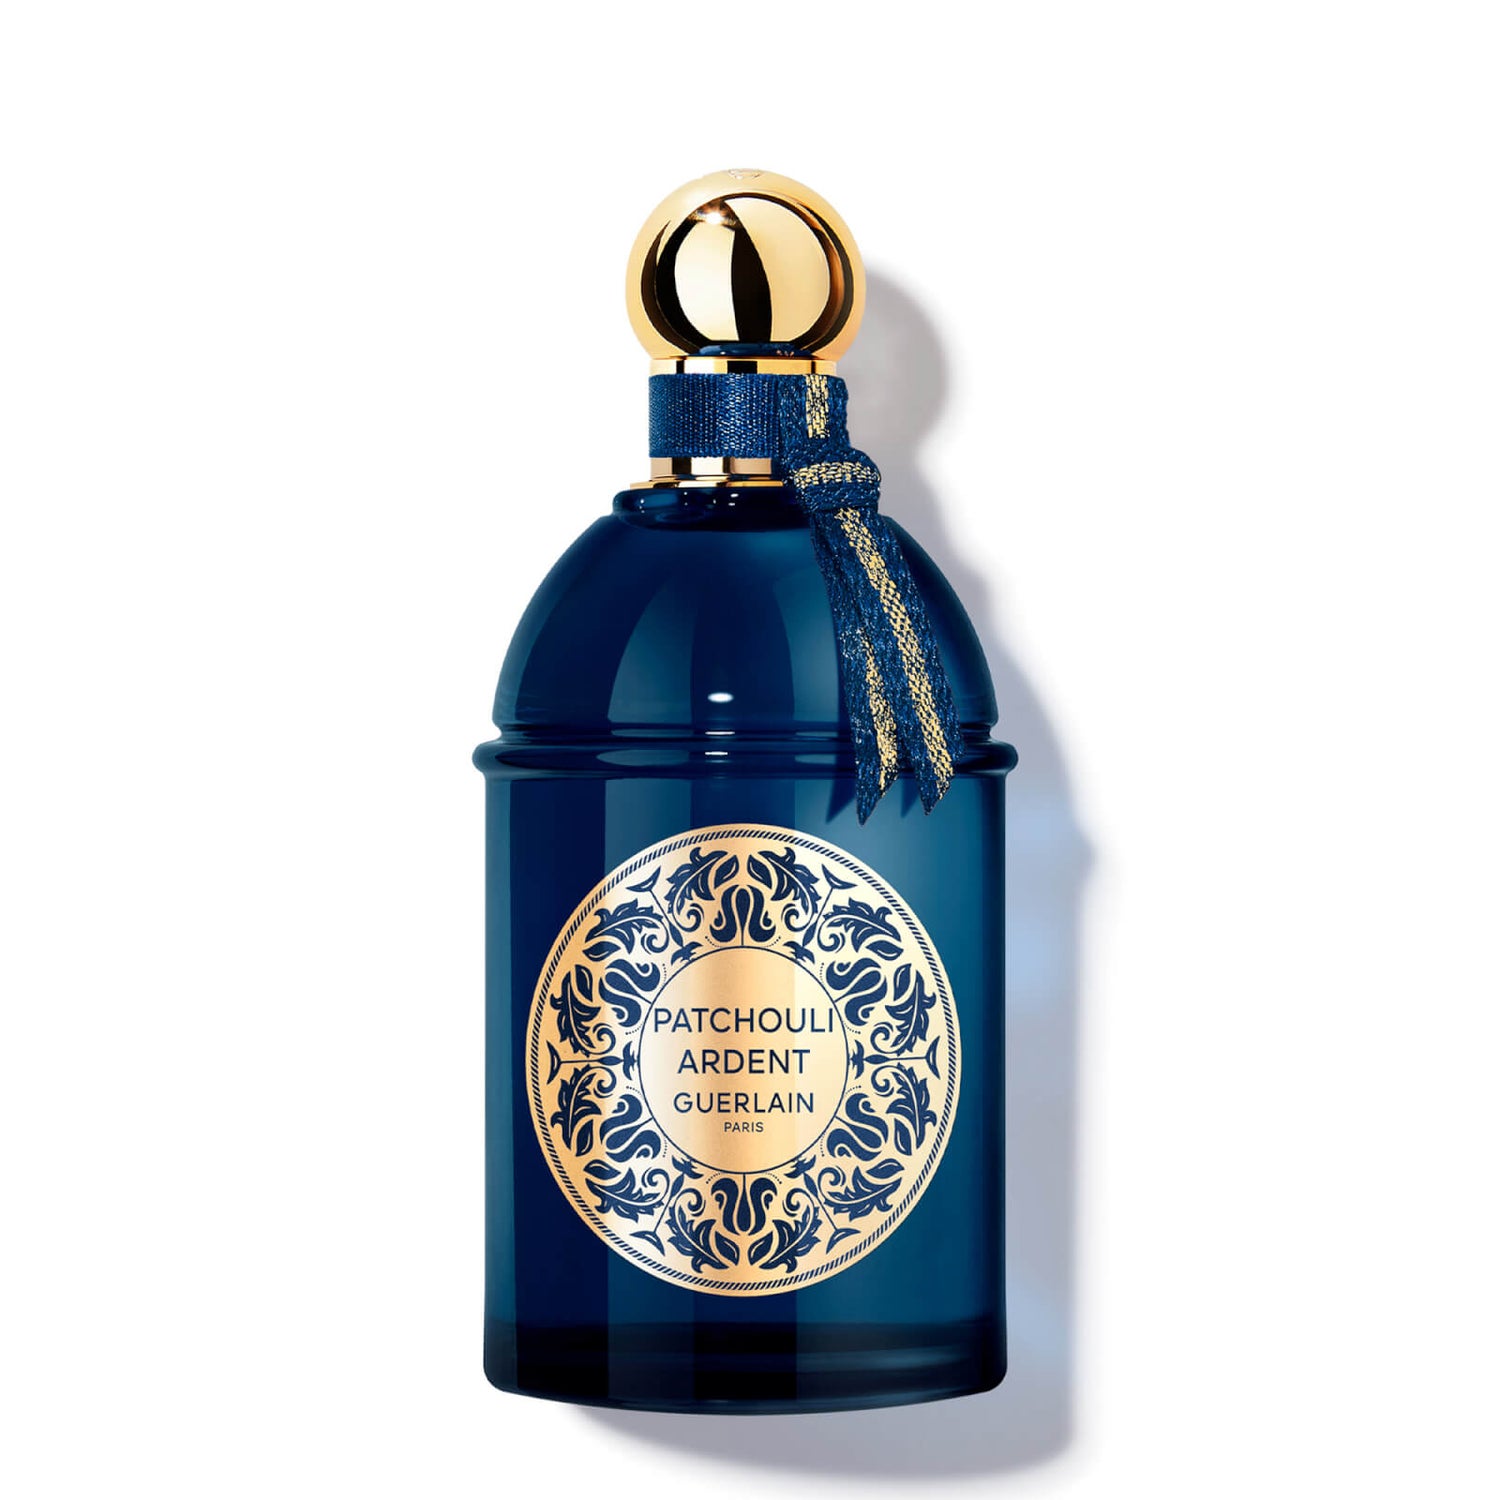 Guerlain Les Absolus D'Orient Patchouli Ardent Eau De Parfum 125ml